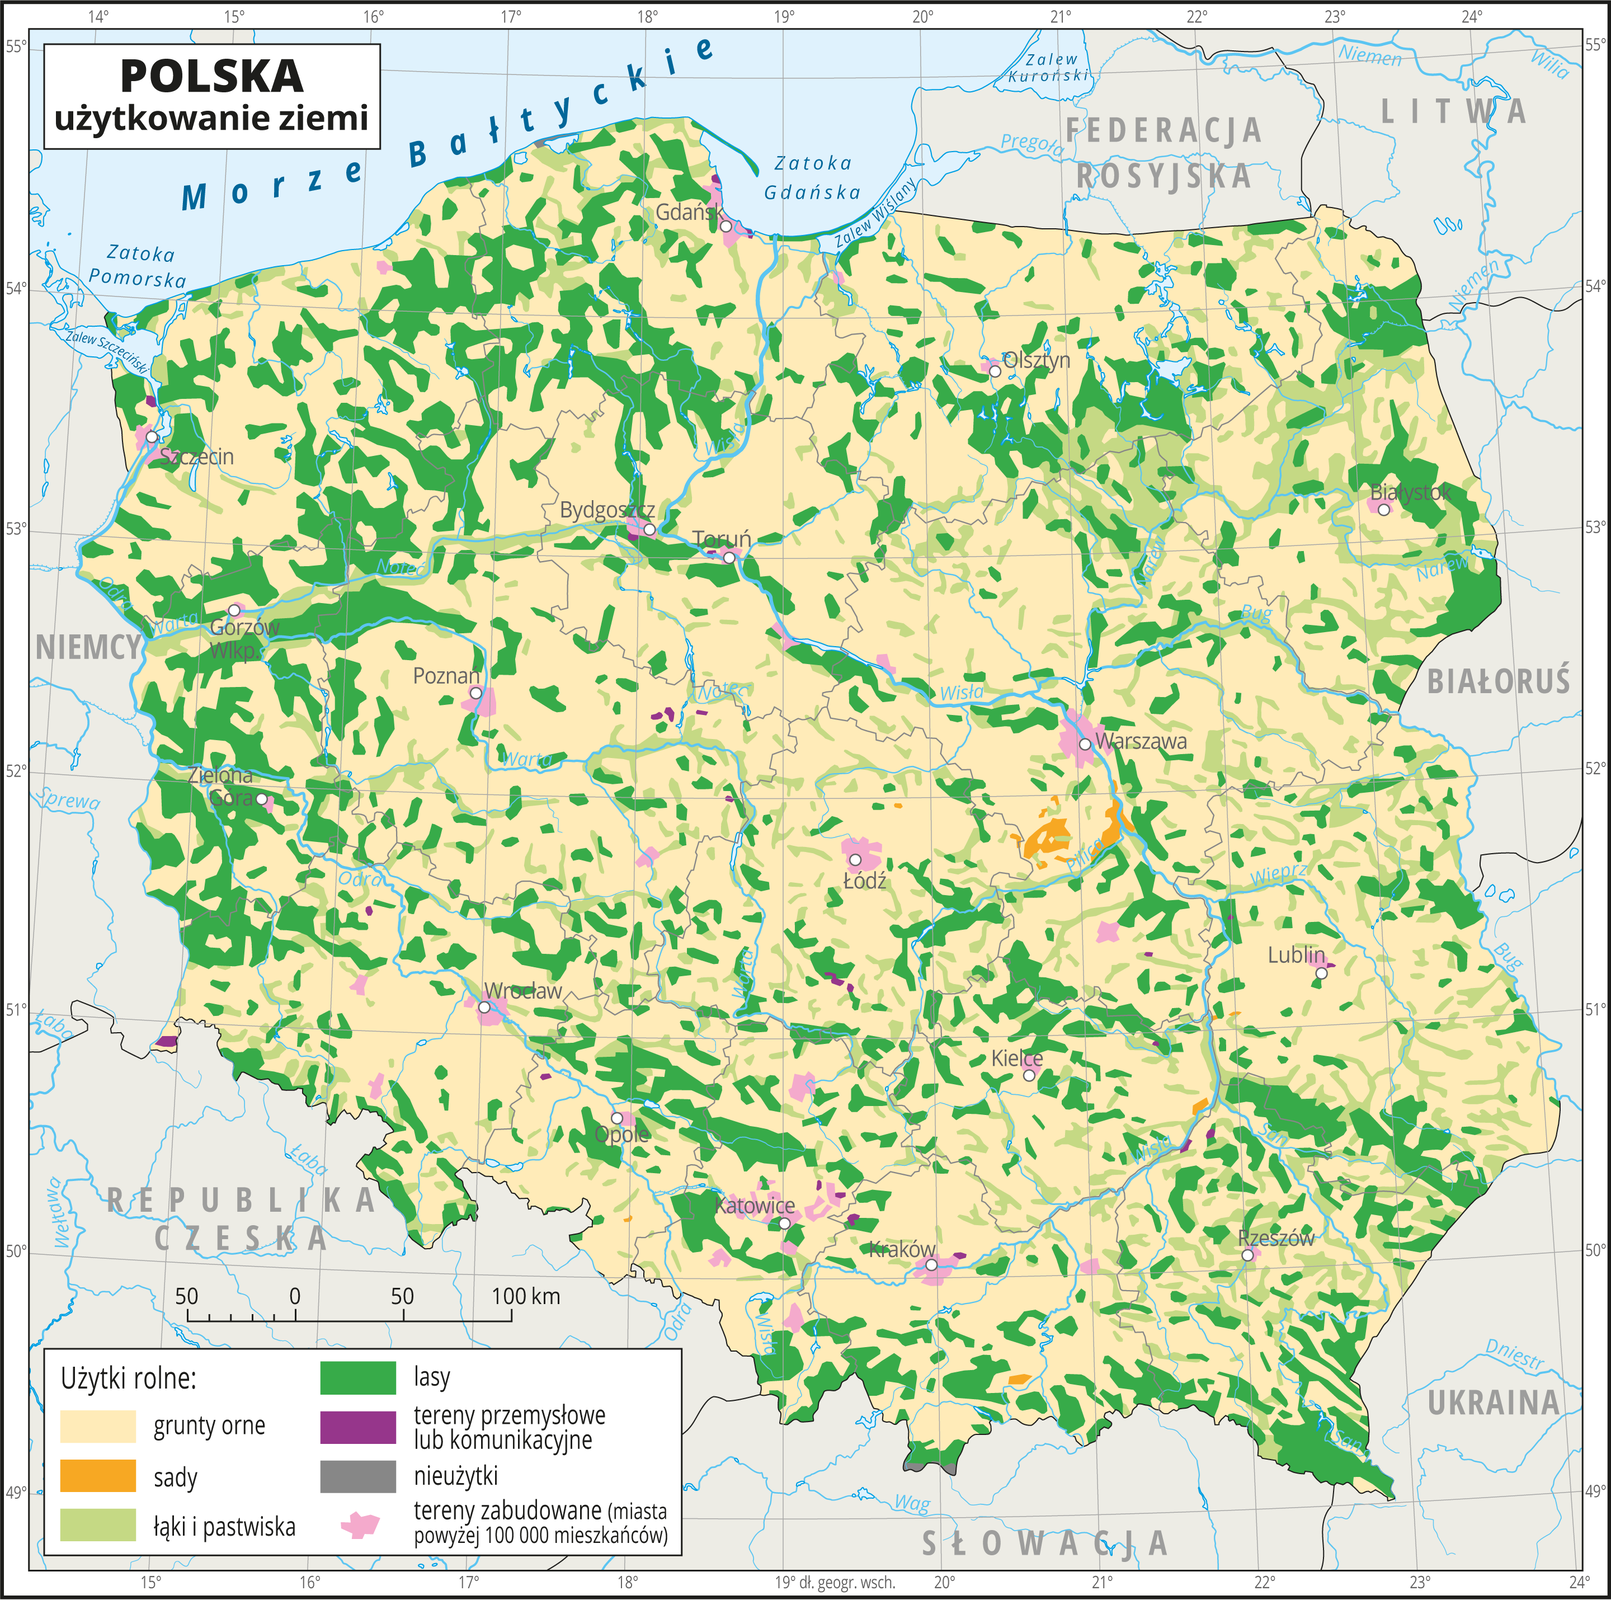 Ilustracja przedstawia mapę Polski. Na mapie za pomocą kolorów przedstawiono użytkowanie ziemi w Polsce. Oznaczono i opisano główne miasta. Granice województw oznaczono szarymi liniami. Opisano państwa sąsiadujące. Na mapie kolorem kremowym oznaczono grunty orne, zajmujące większą część Polski. Kolorem jasnozielonym oznaczono łąki i pastwiska. Występują one nierównomiernie na terenie całego kraju ale największe ich skupisko jest we wschodniej części Polski. Kolorem zielonym oznaczono występowanie lasów, które występują nierównomiernie na terenie całego kraju. Kolorem różowym oznaczono tereny zabudowane, które pokrywają się z położeniem miast. Kolorem pomarańczowym oznaczono sady, które skupione są w województwie mazowieckim. Dookoła mapy w białej ramce opisano współrzędne geograficzne co jeden stopień. W legendzie na dole mapy objaśniono kolory użyte na mapie.